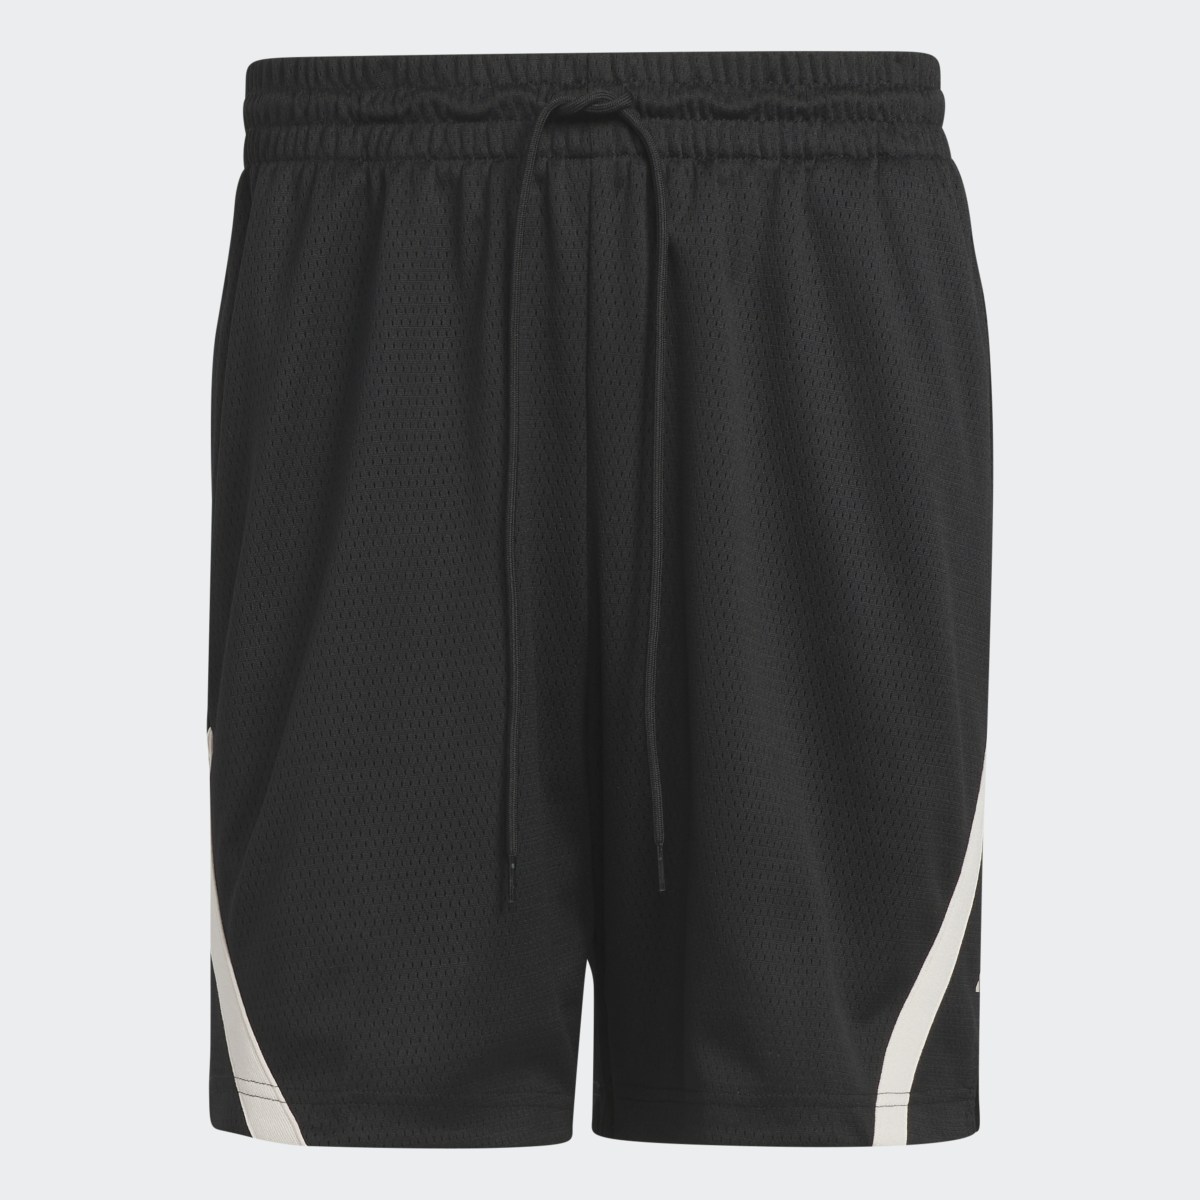 Adidas Shorts Select Summer. 4